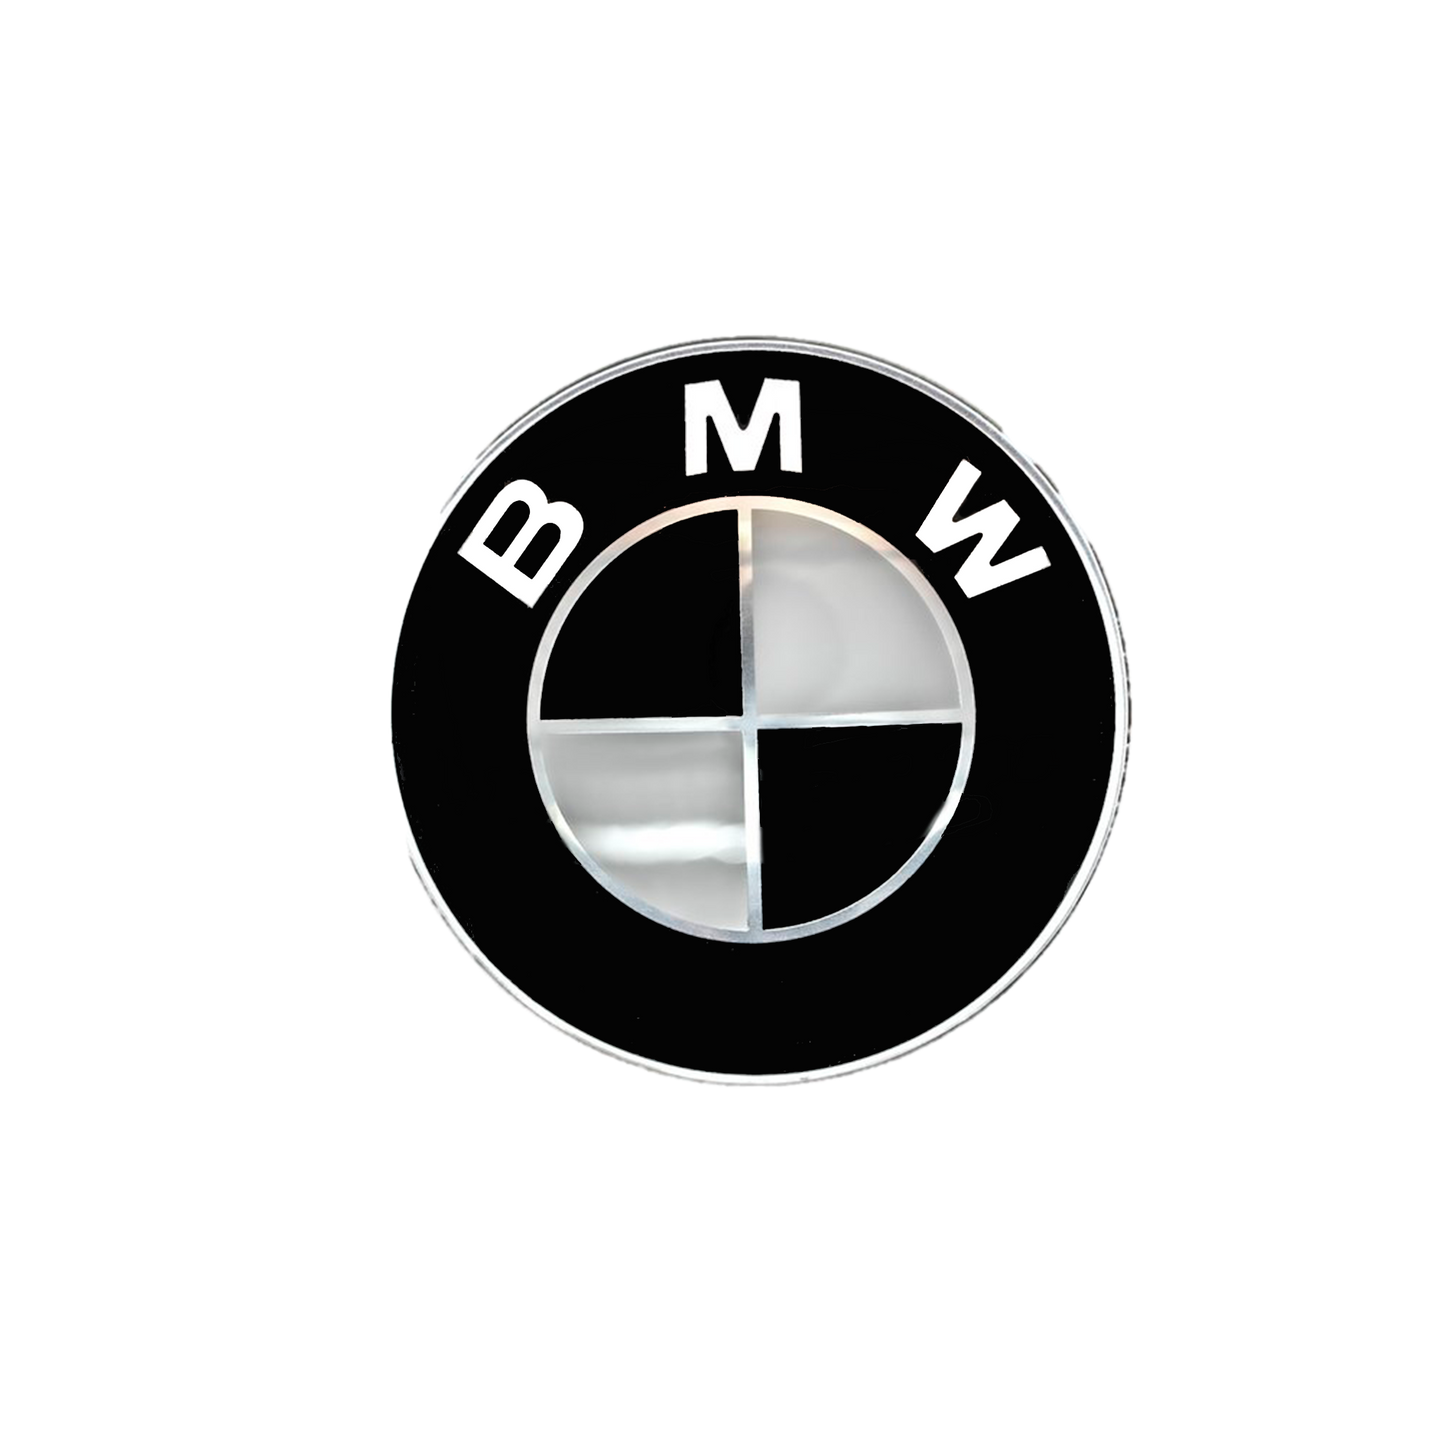 BMW Bag logo Sort & Hvid 74mm